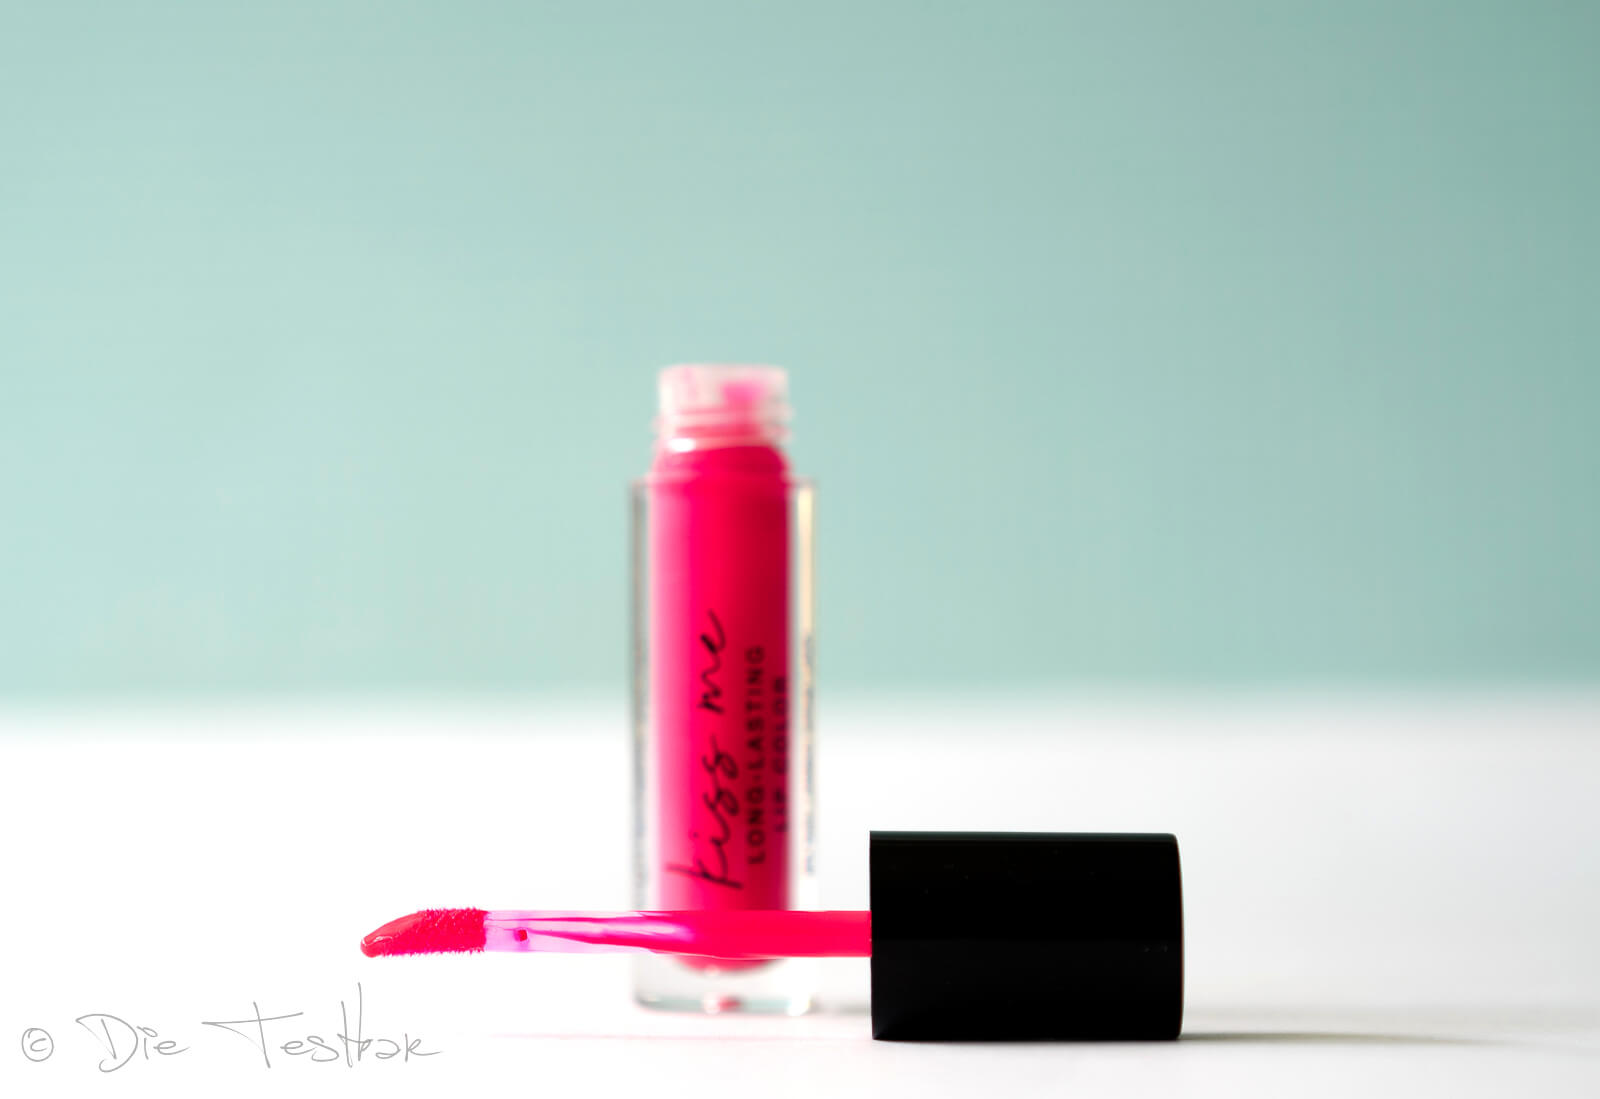 être belle cosmetics - Kiss me long-lasting Lipcolor